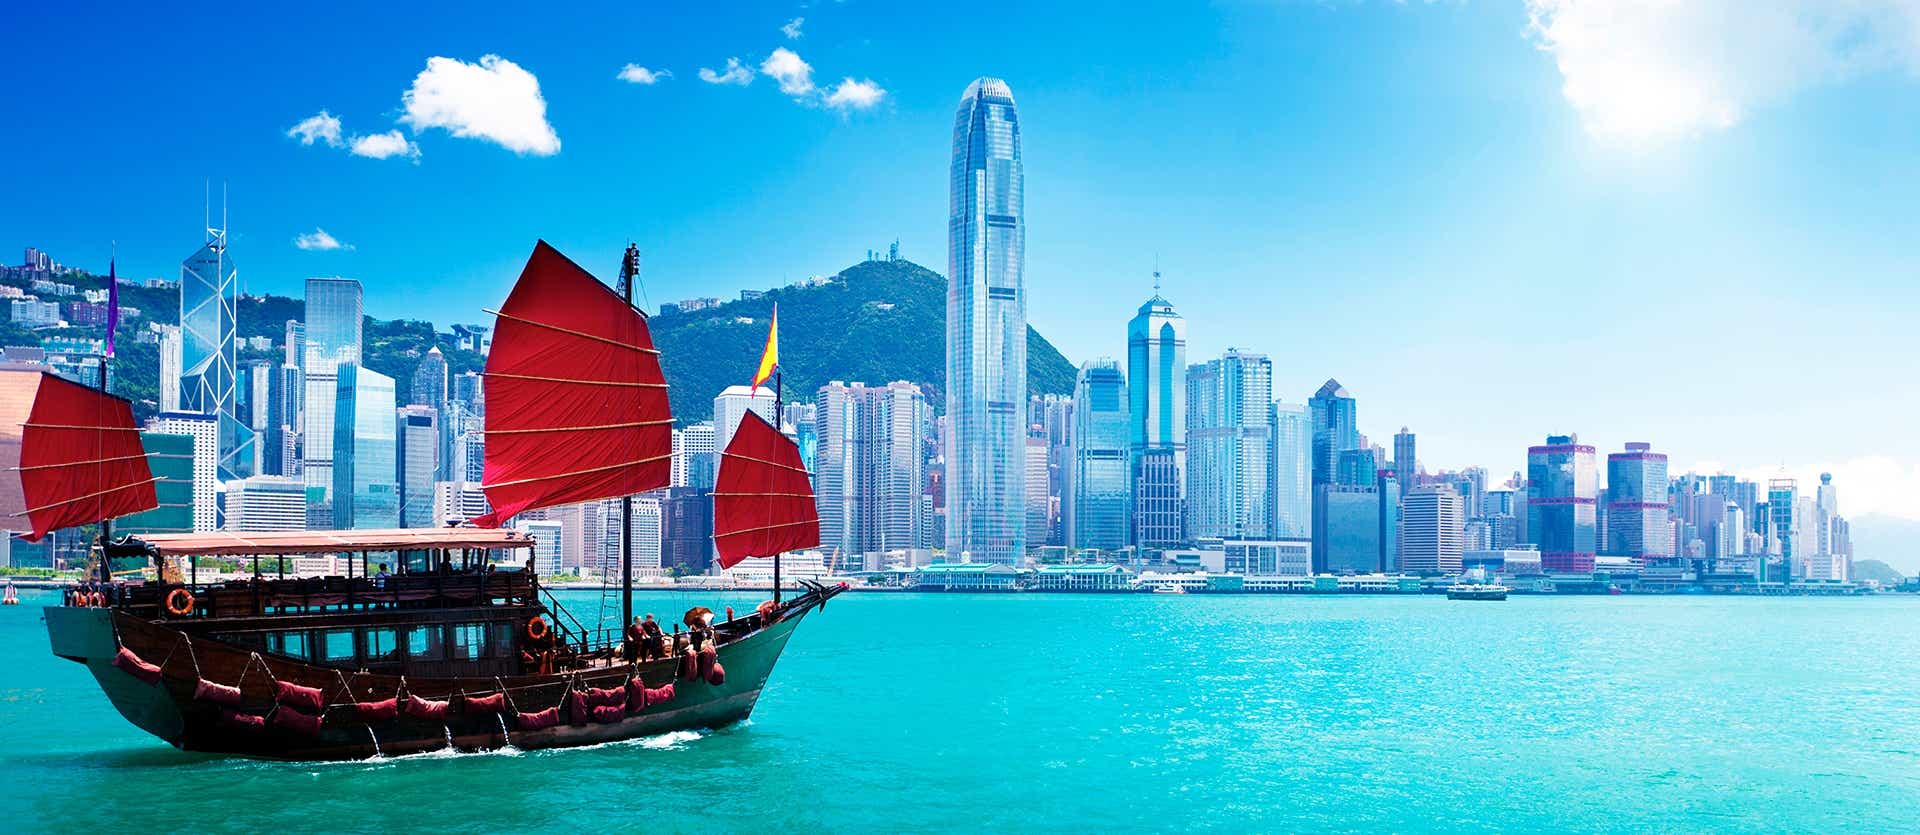 Victoria Harbor <span class="iconos separador"></span> Hong Kong